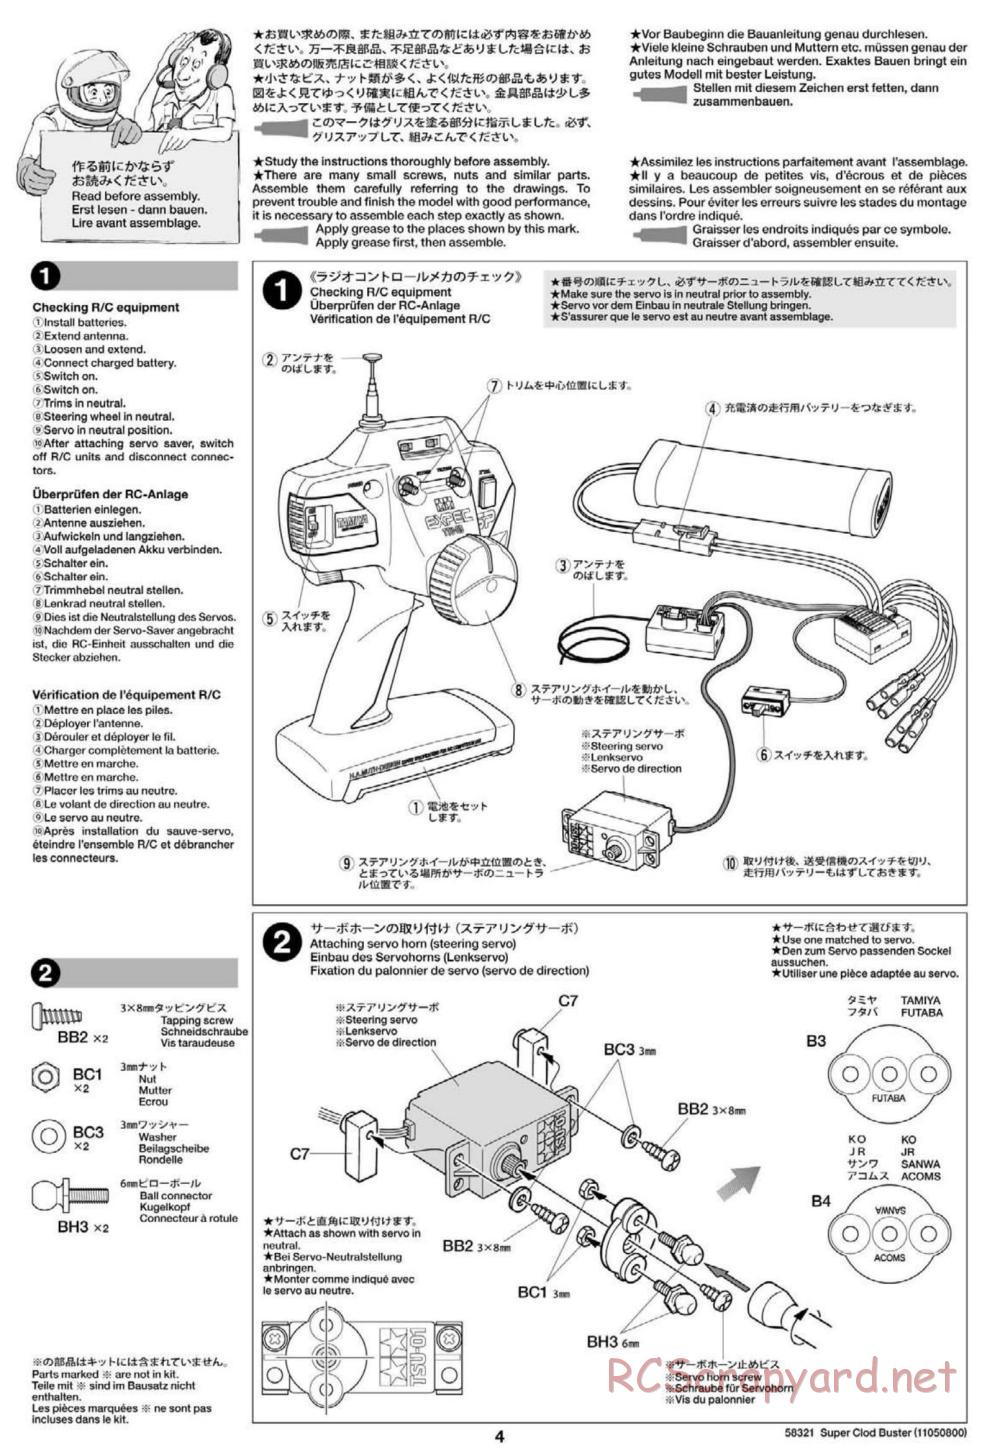 Tamiya - Super Clod Buster Chassis - Manual - Page 4